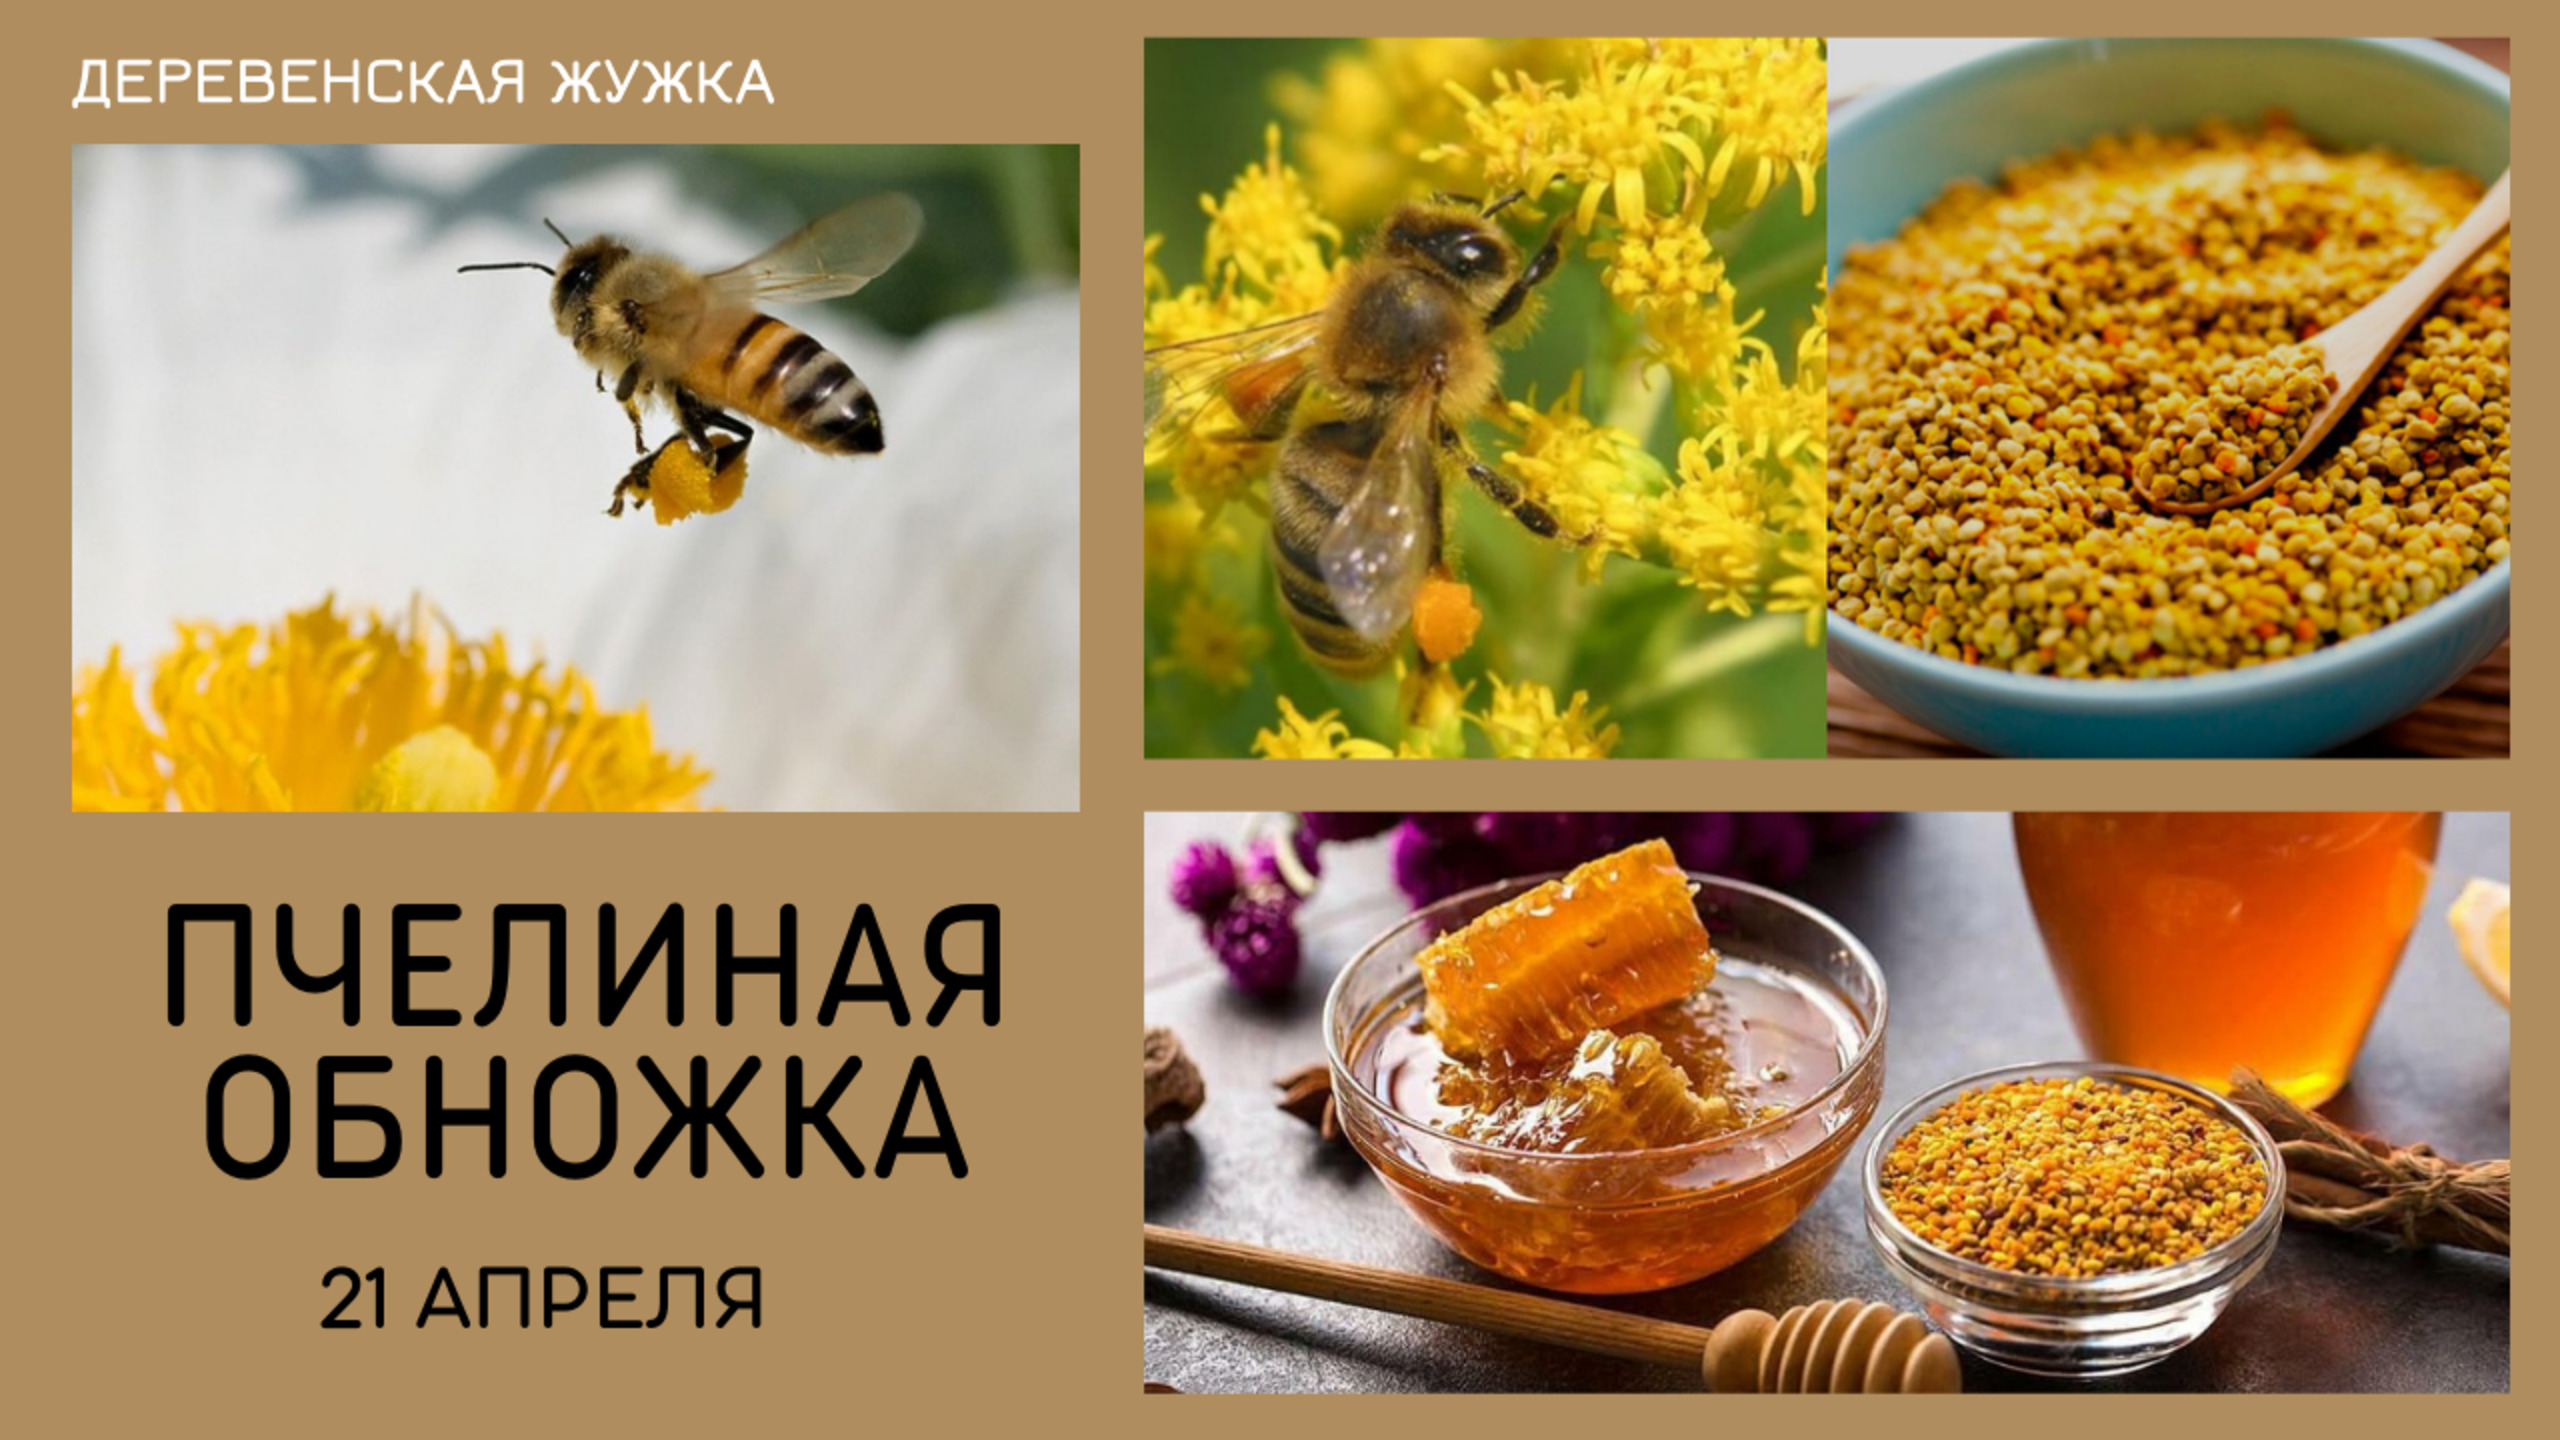 Пчелы носят обножку 21.04.20г Челябинская Область (Bee.)